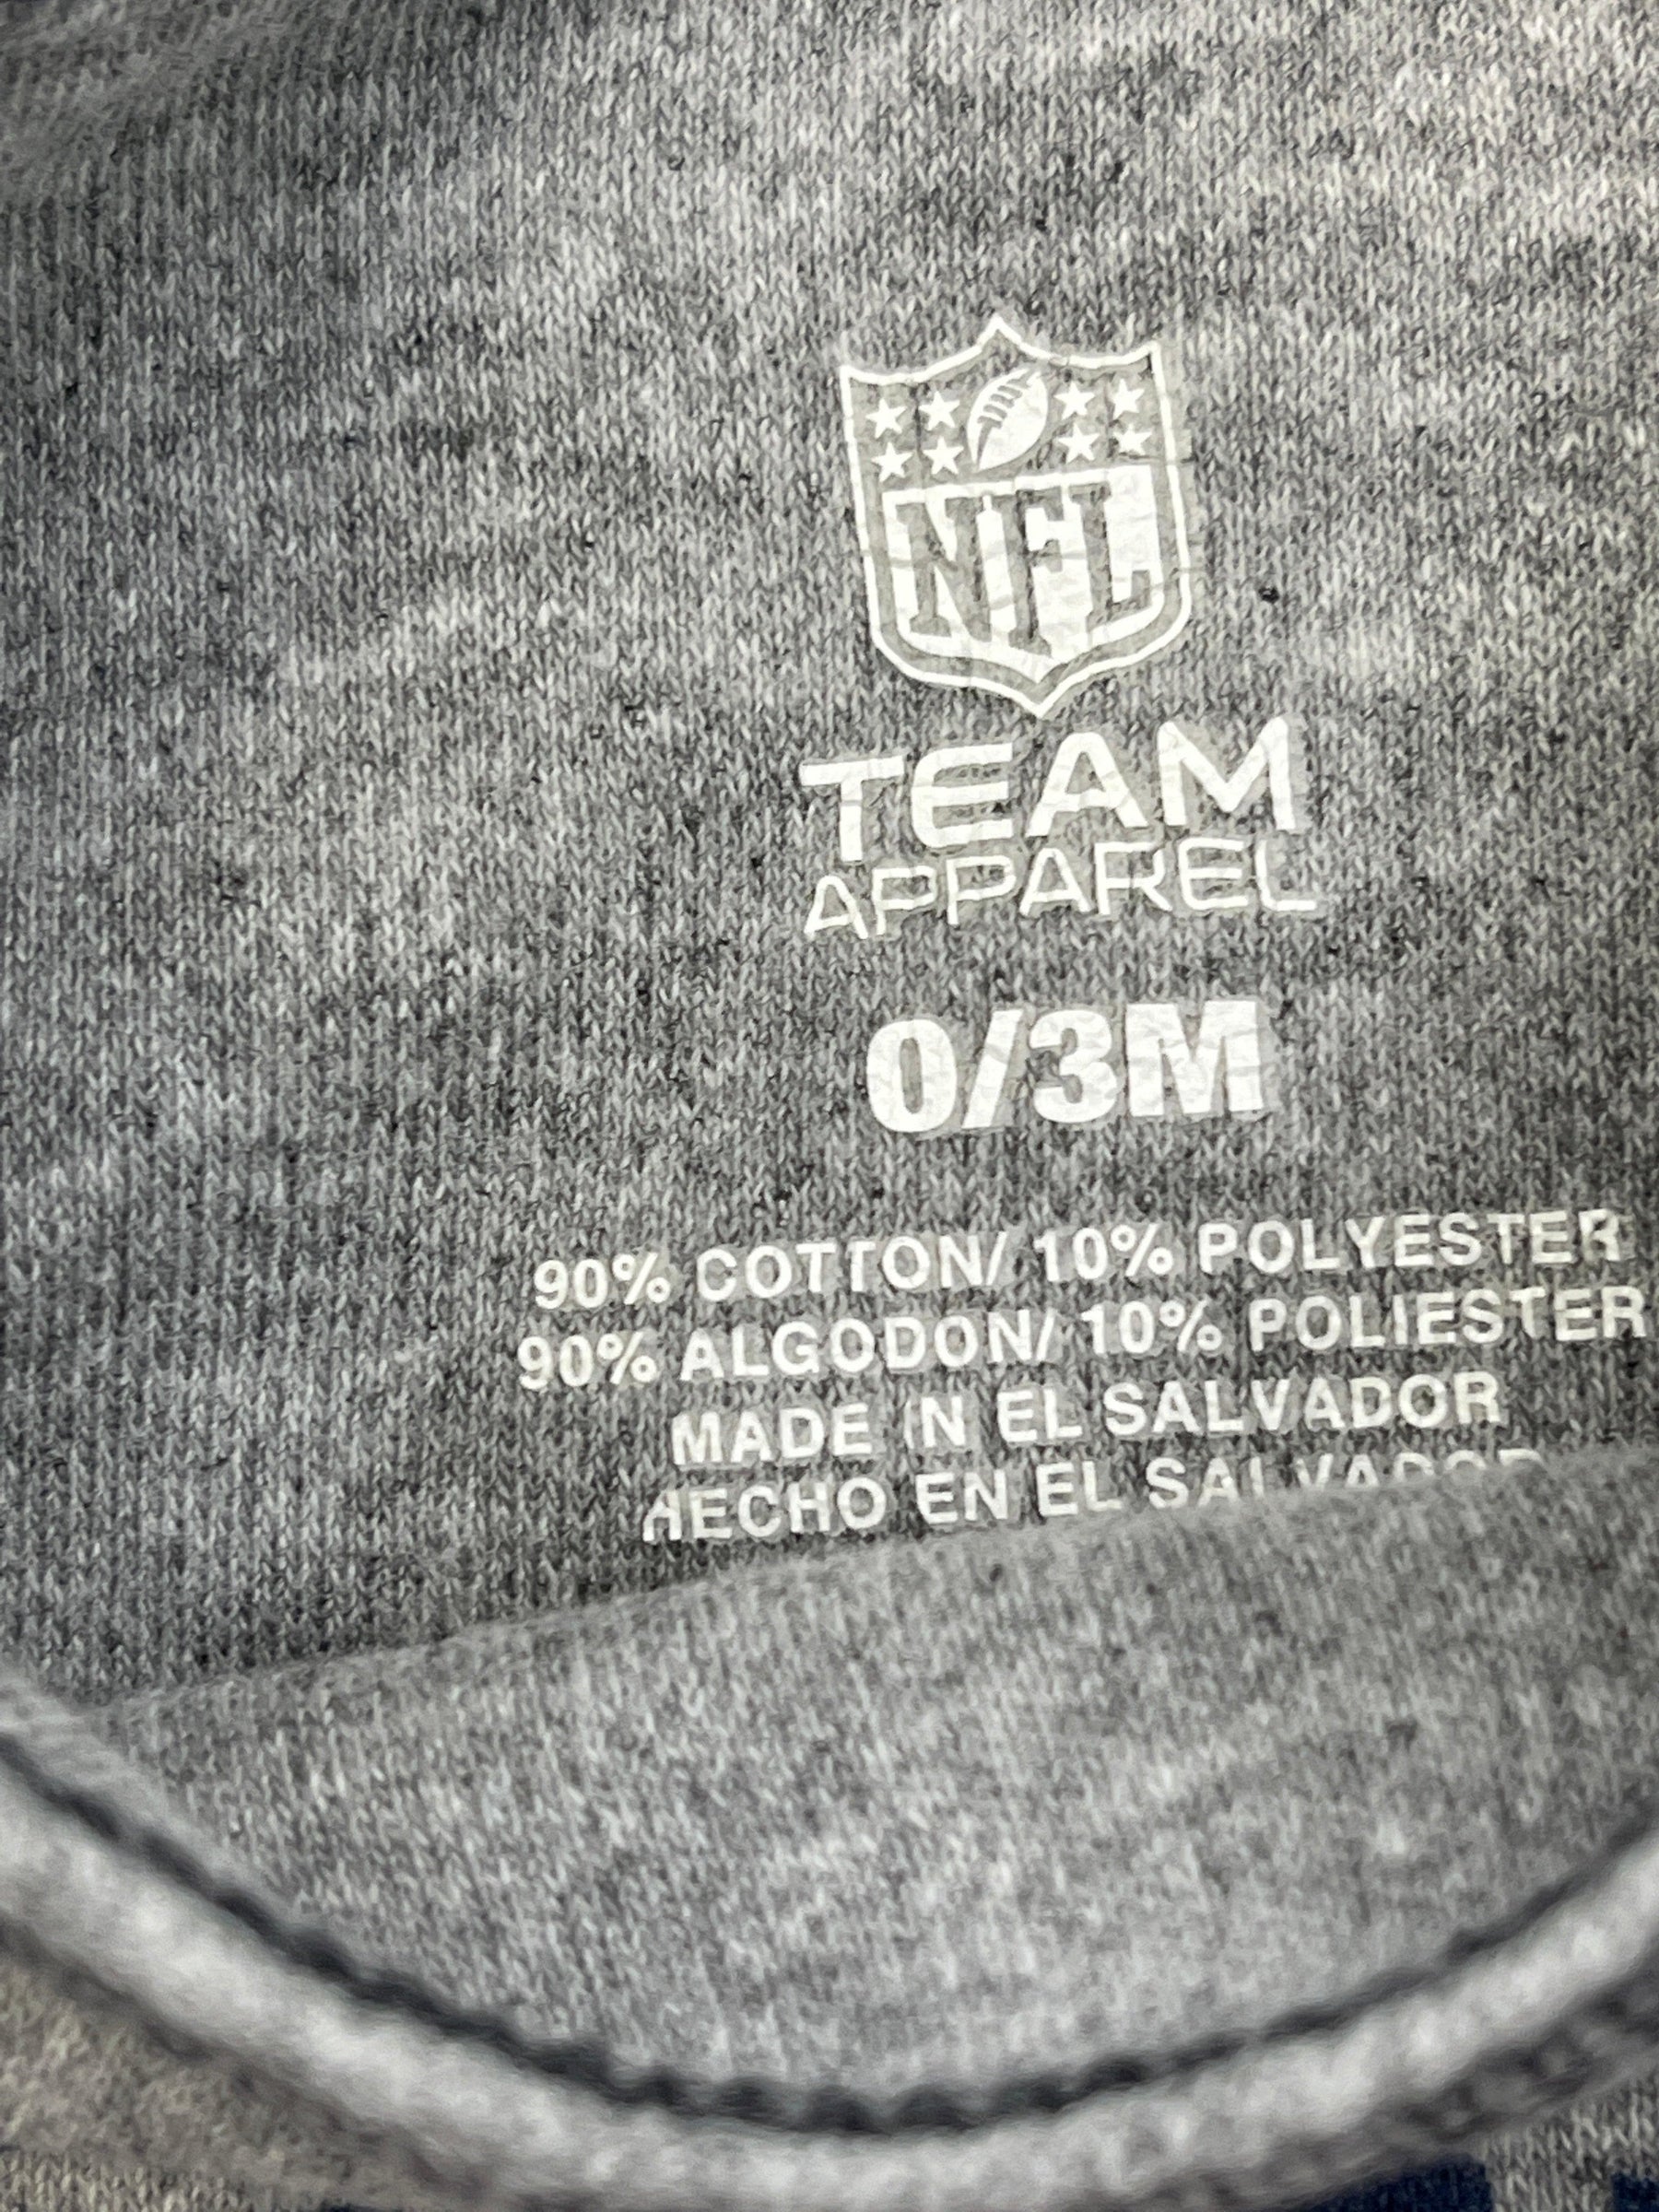 NFL Denver Broncos Grey Bodysuit 0-3 months